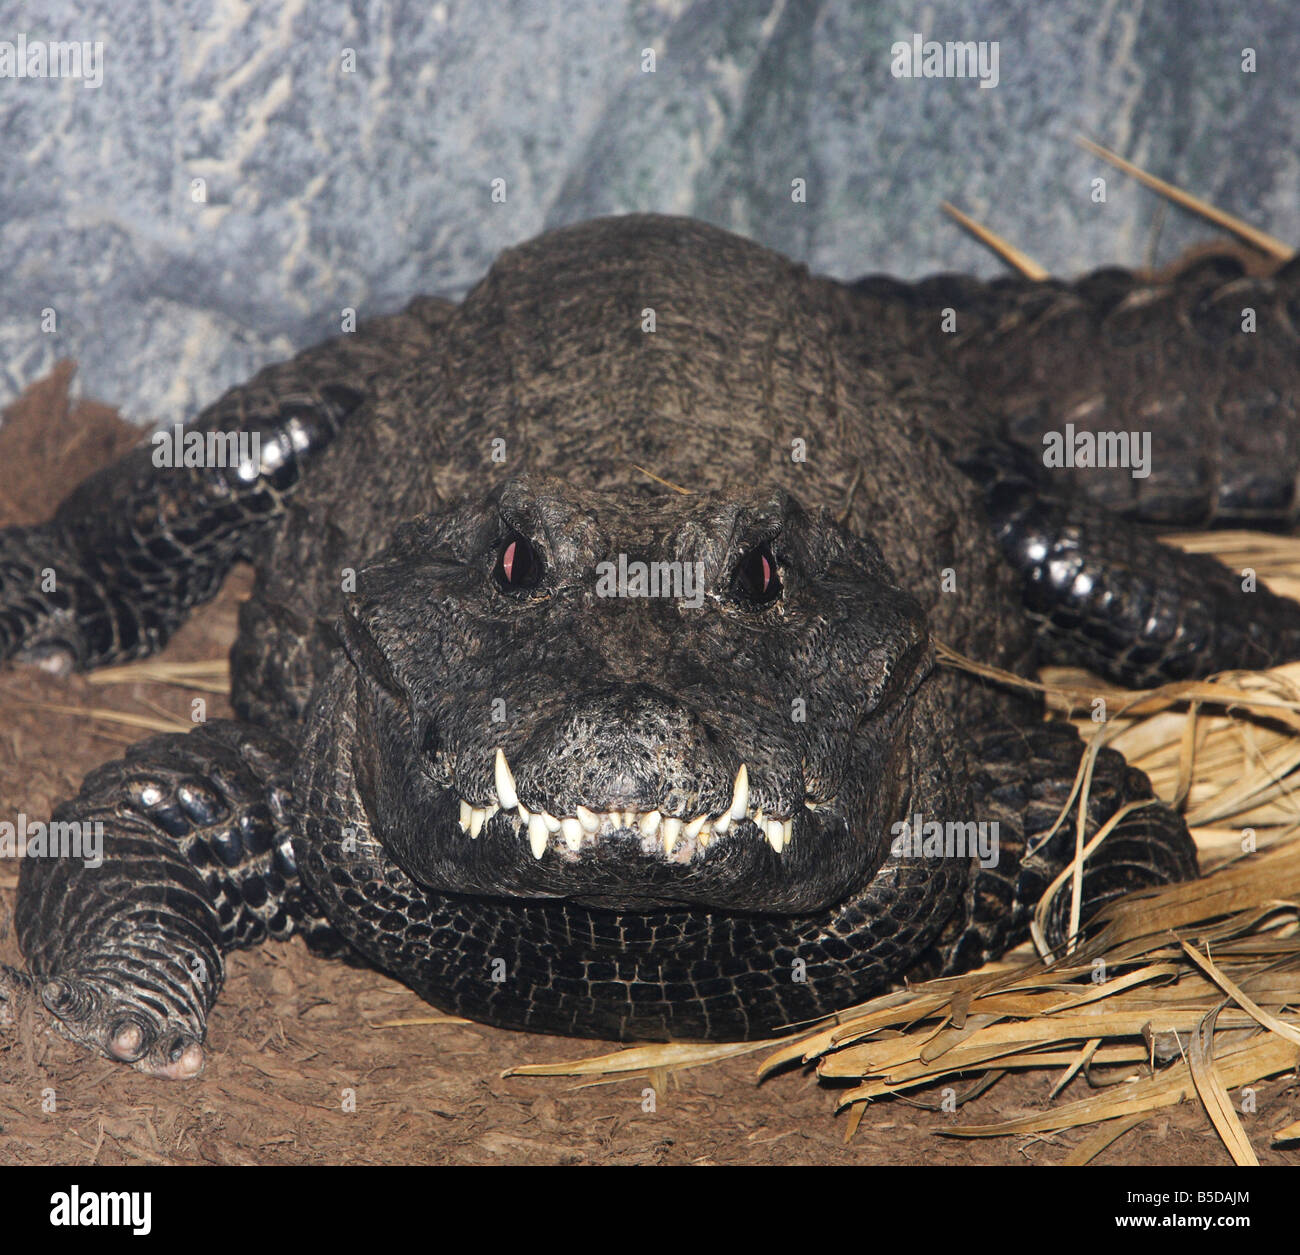 Une extreme close up du museau d'un Crocodile nain d'Afrique de l'Ouest Banque D'Images